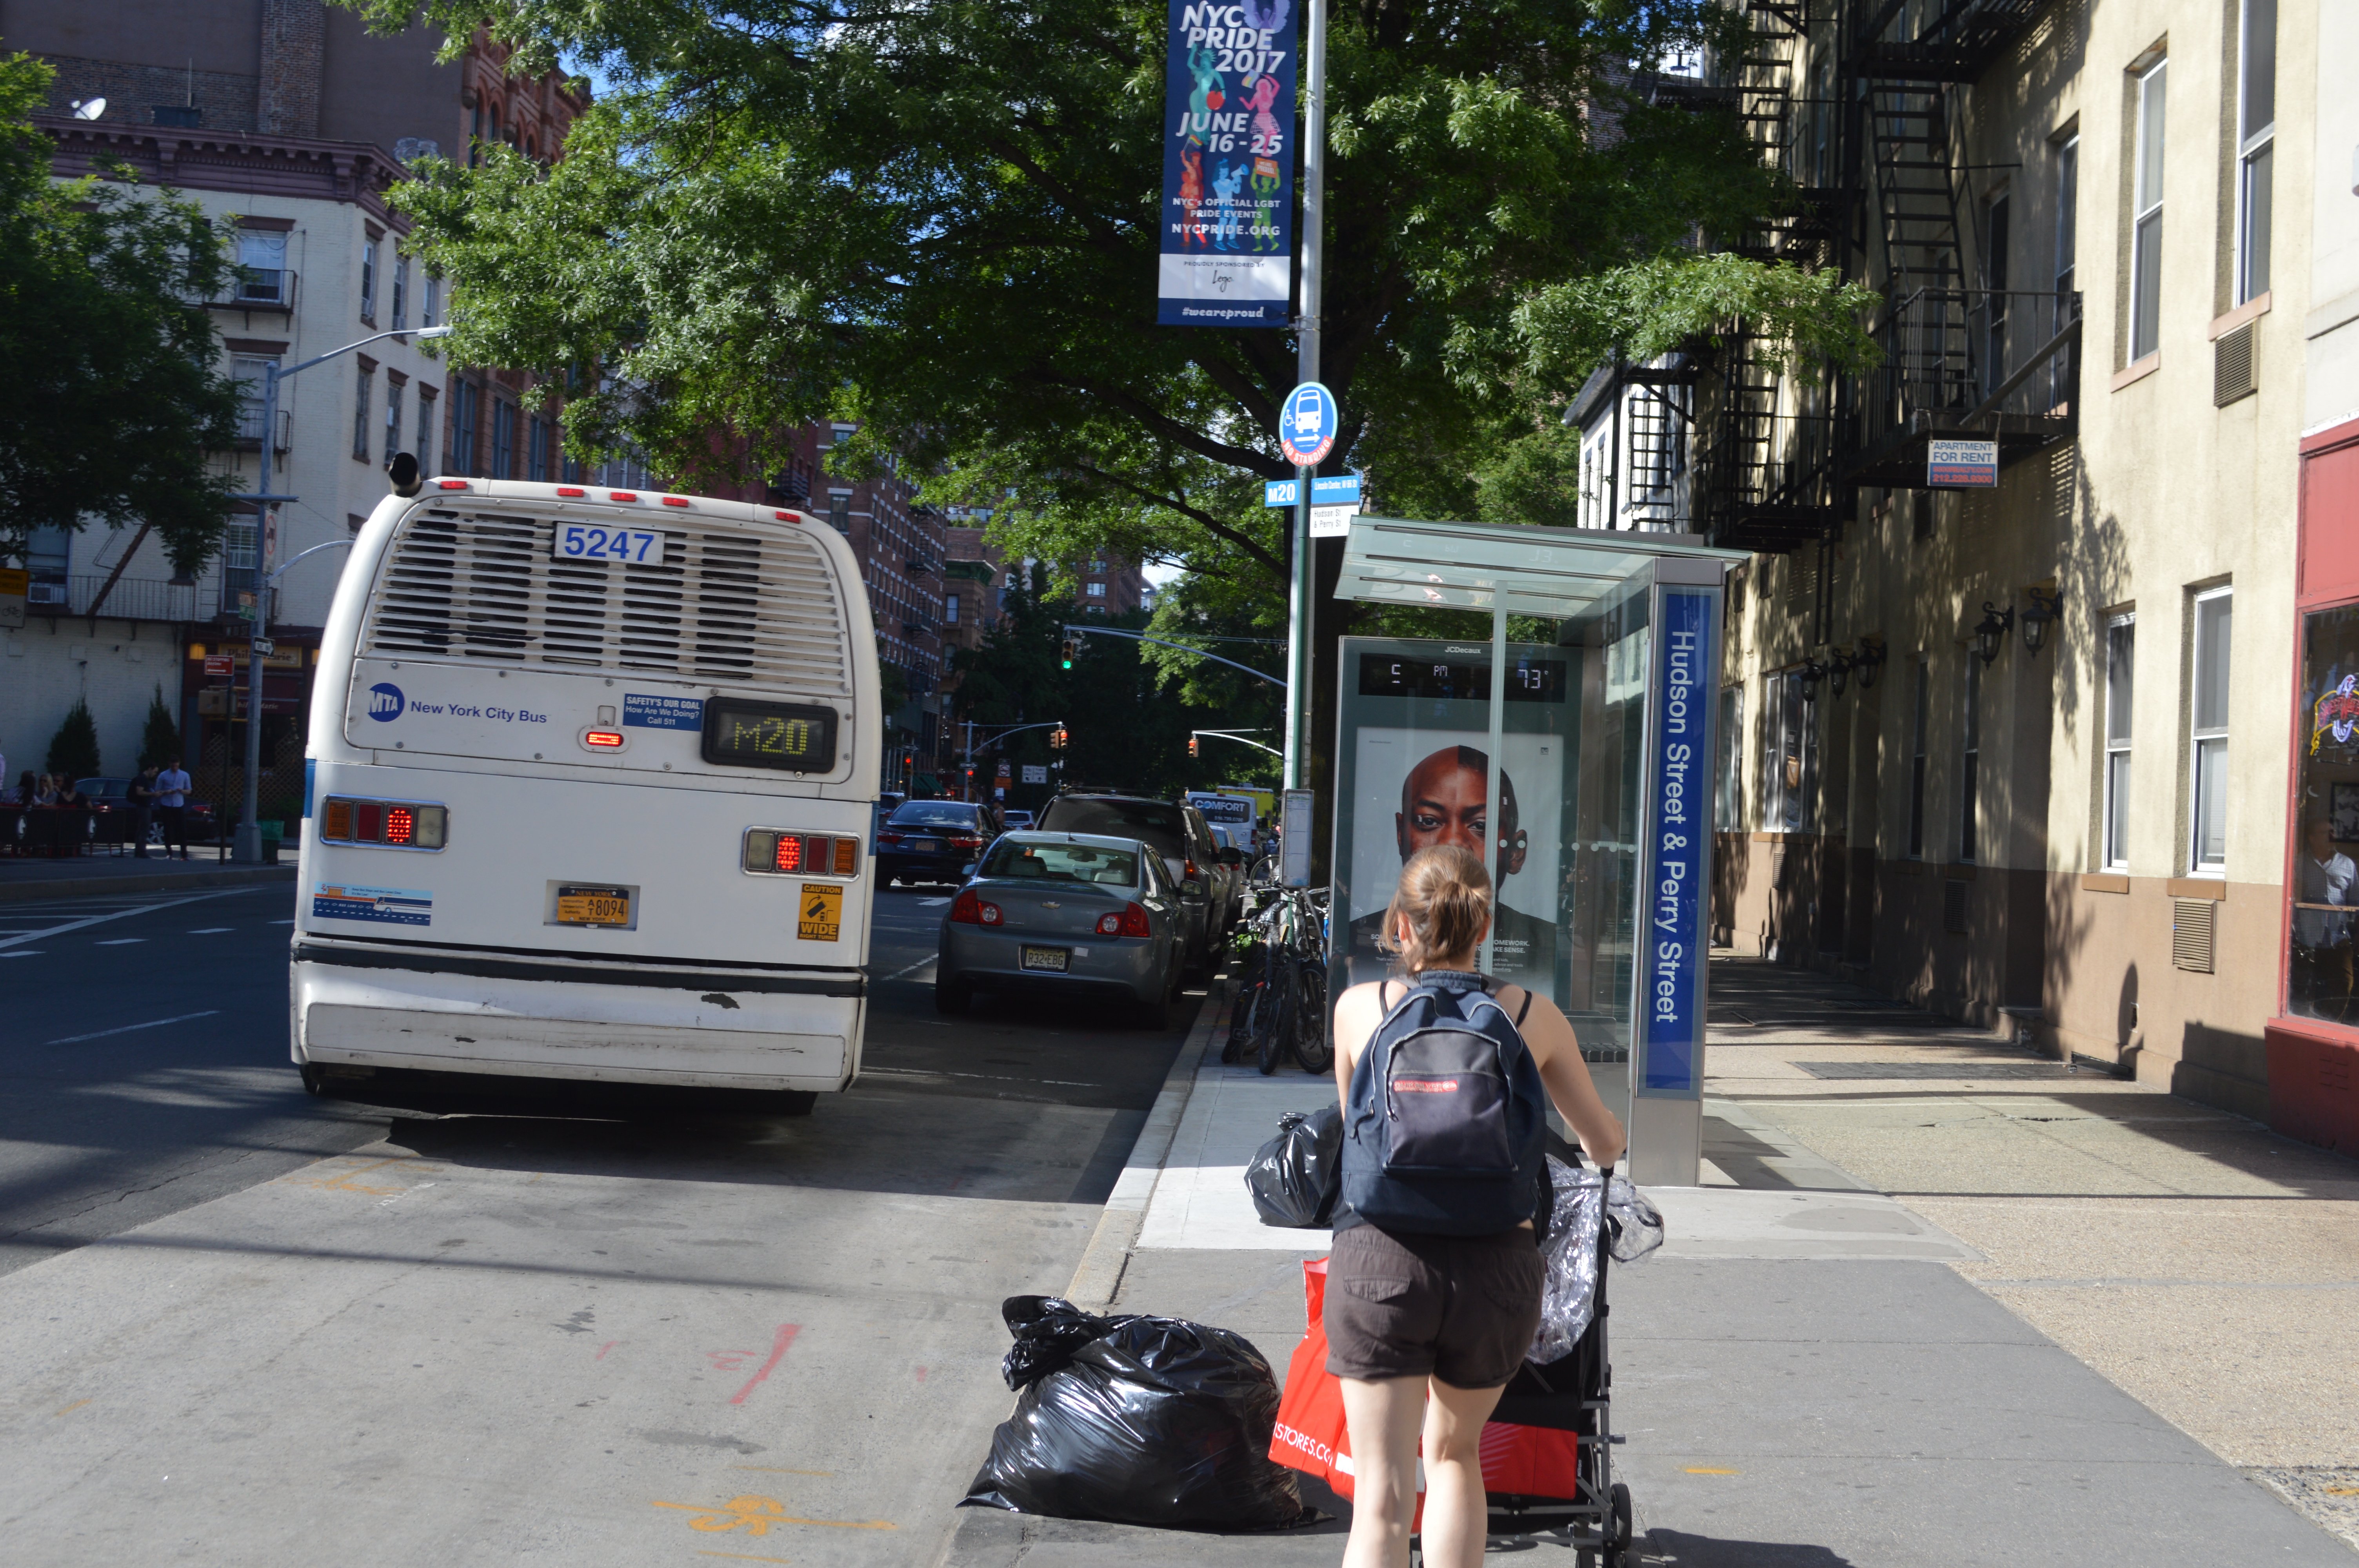 Visiter New York en famille et courir après le bus dans Greenwich Village (façon Friends)